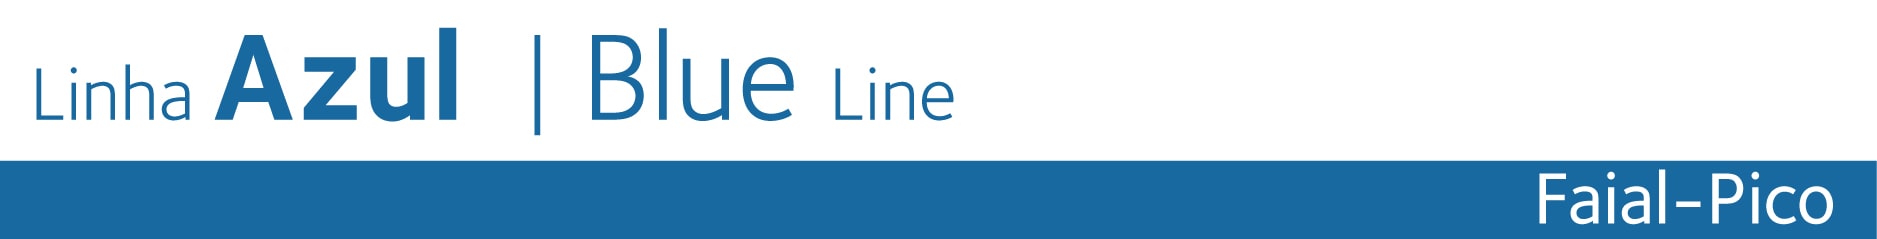 Linha Azul - Blue Line